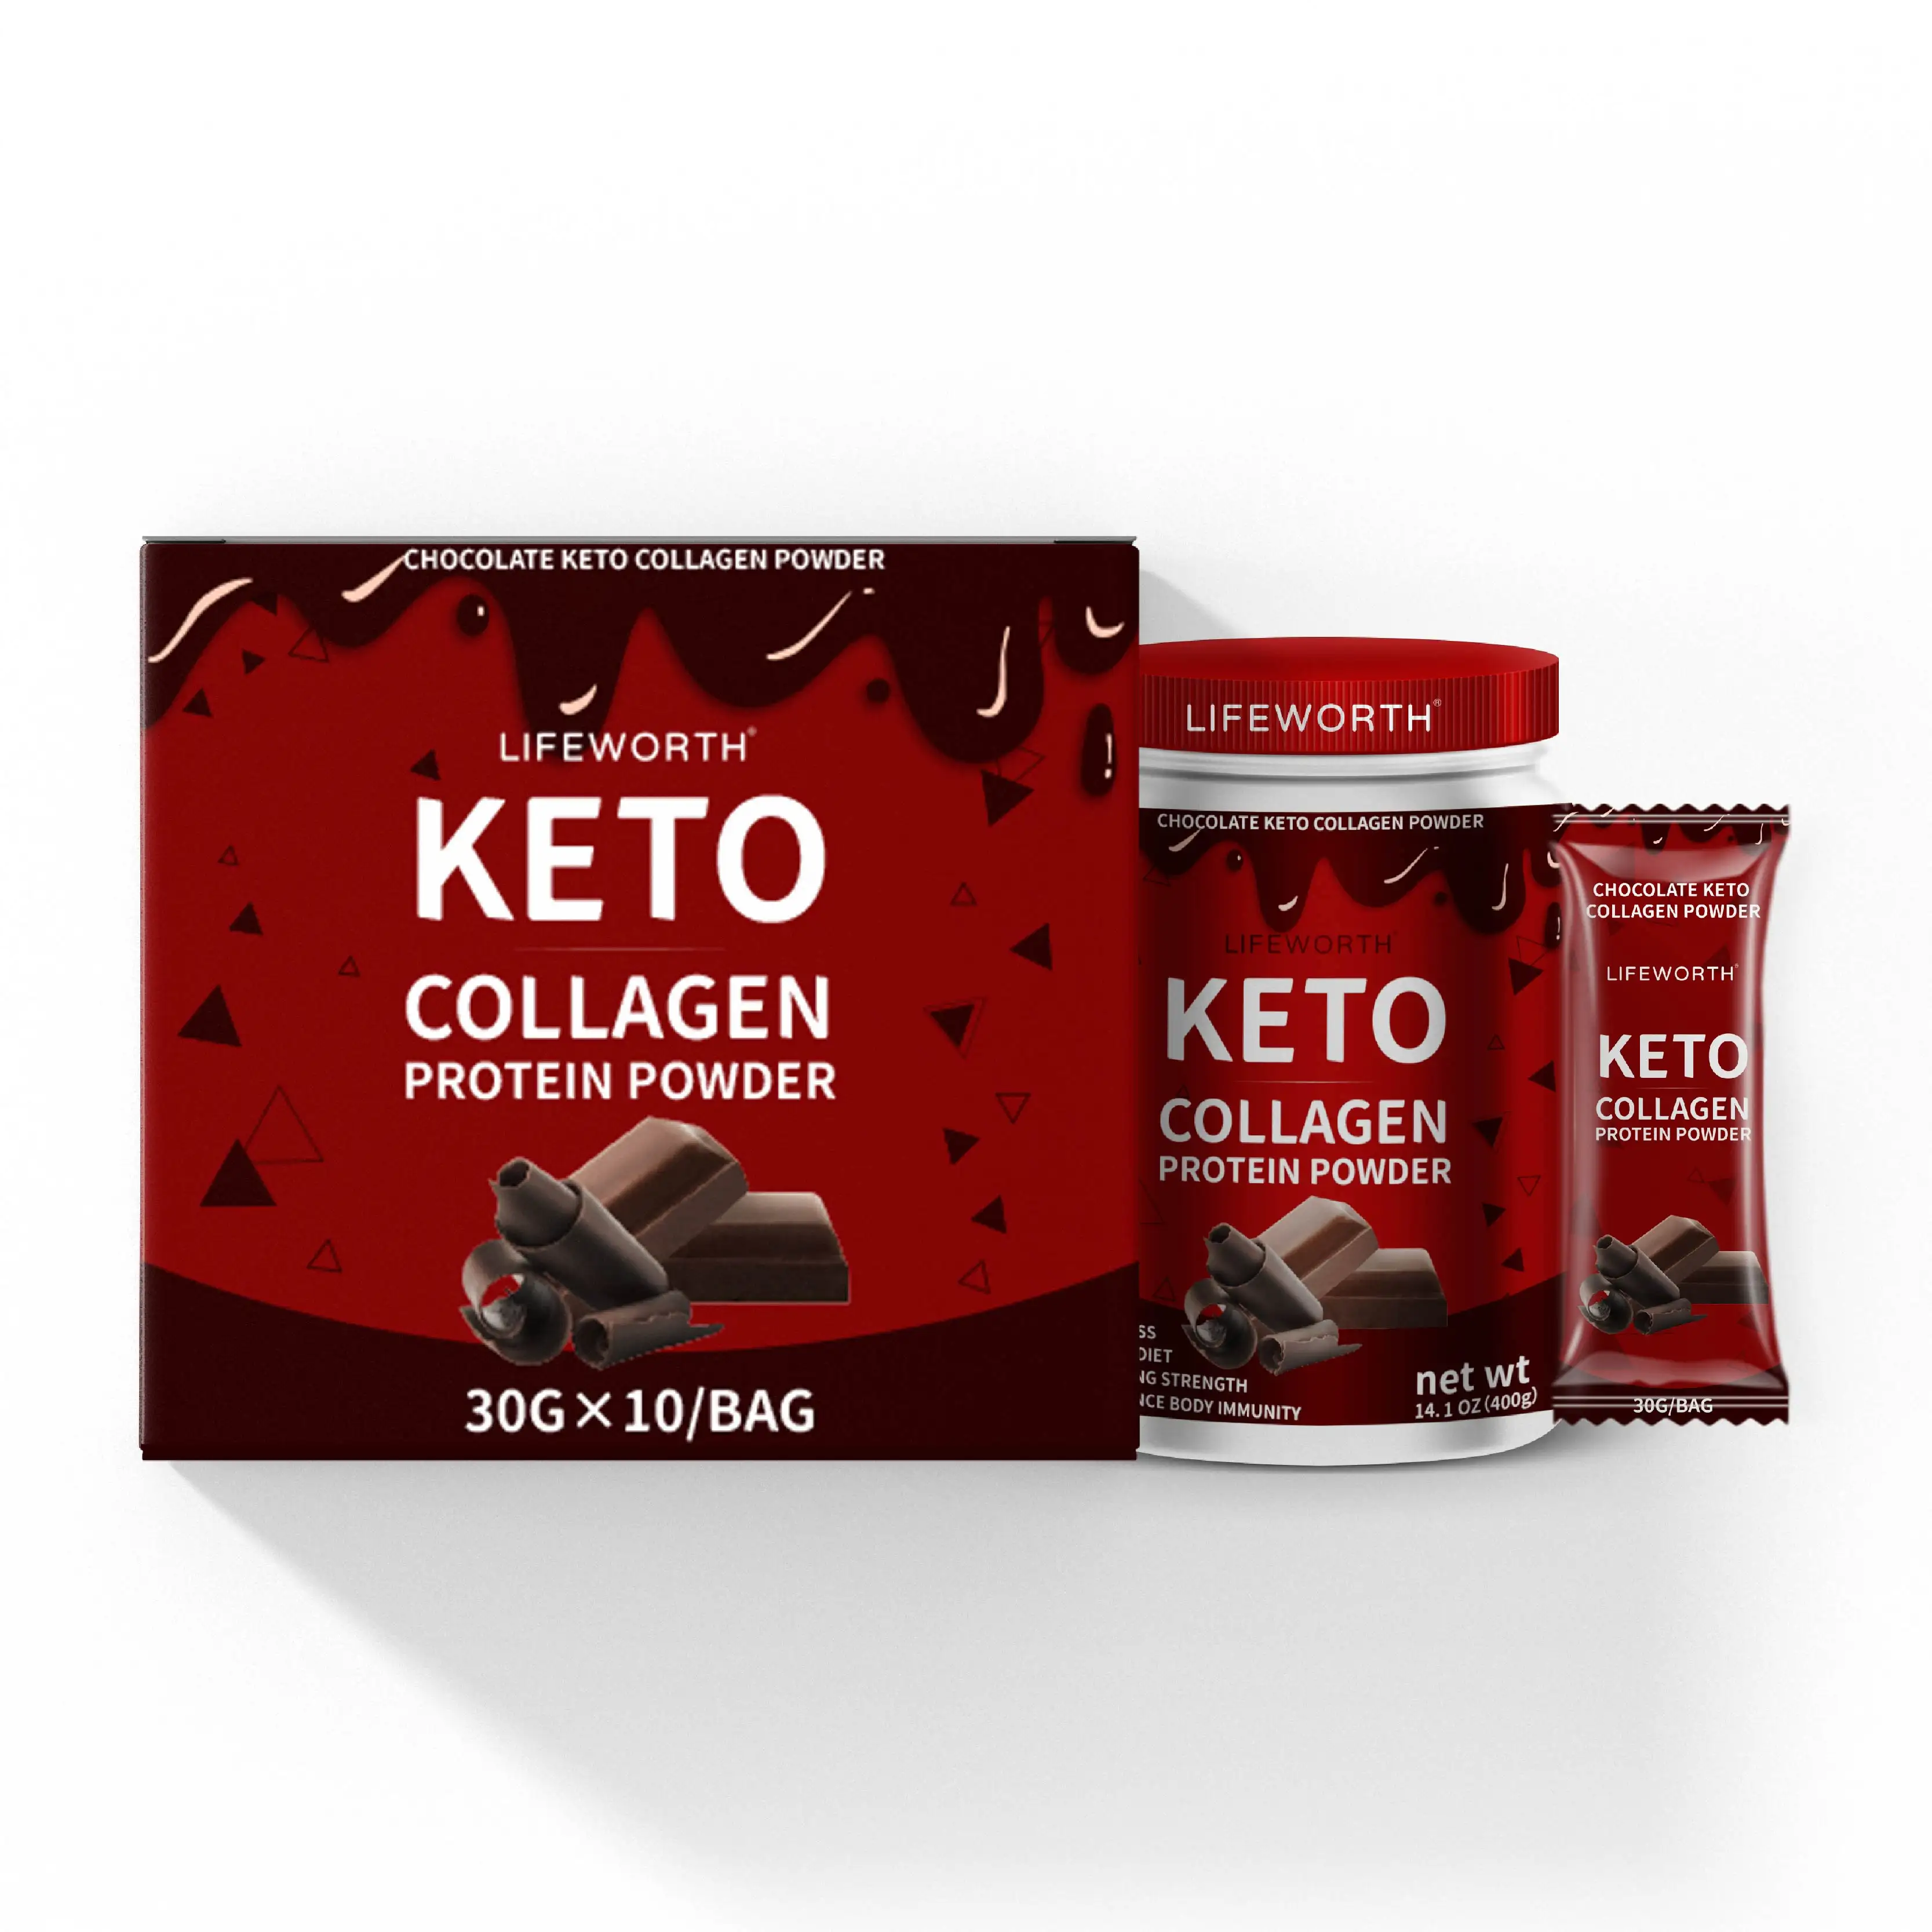 Lifeworth cioccolato sapore keto perdita di peso proteine del collagene in polvere con olio mct oem